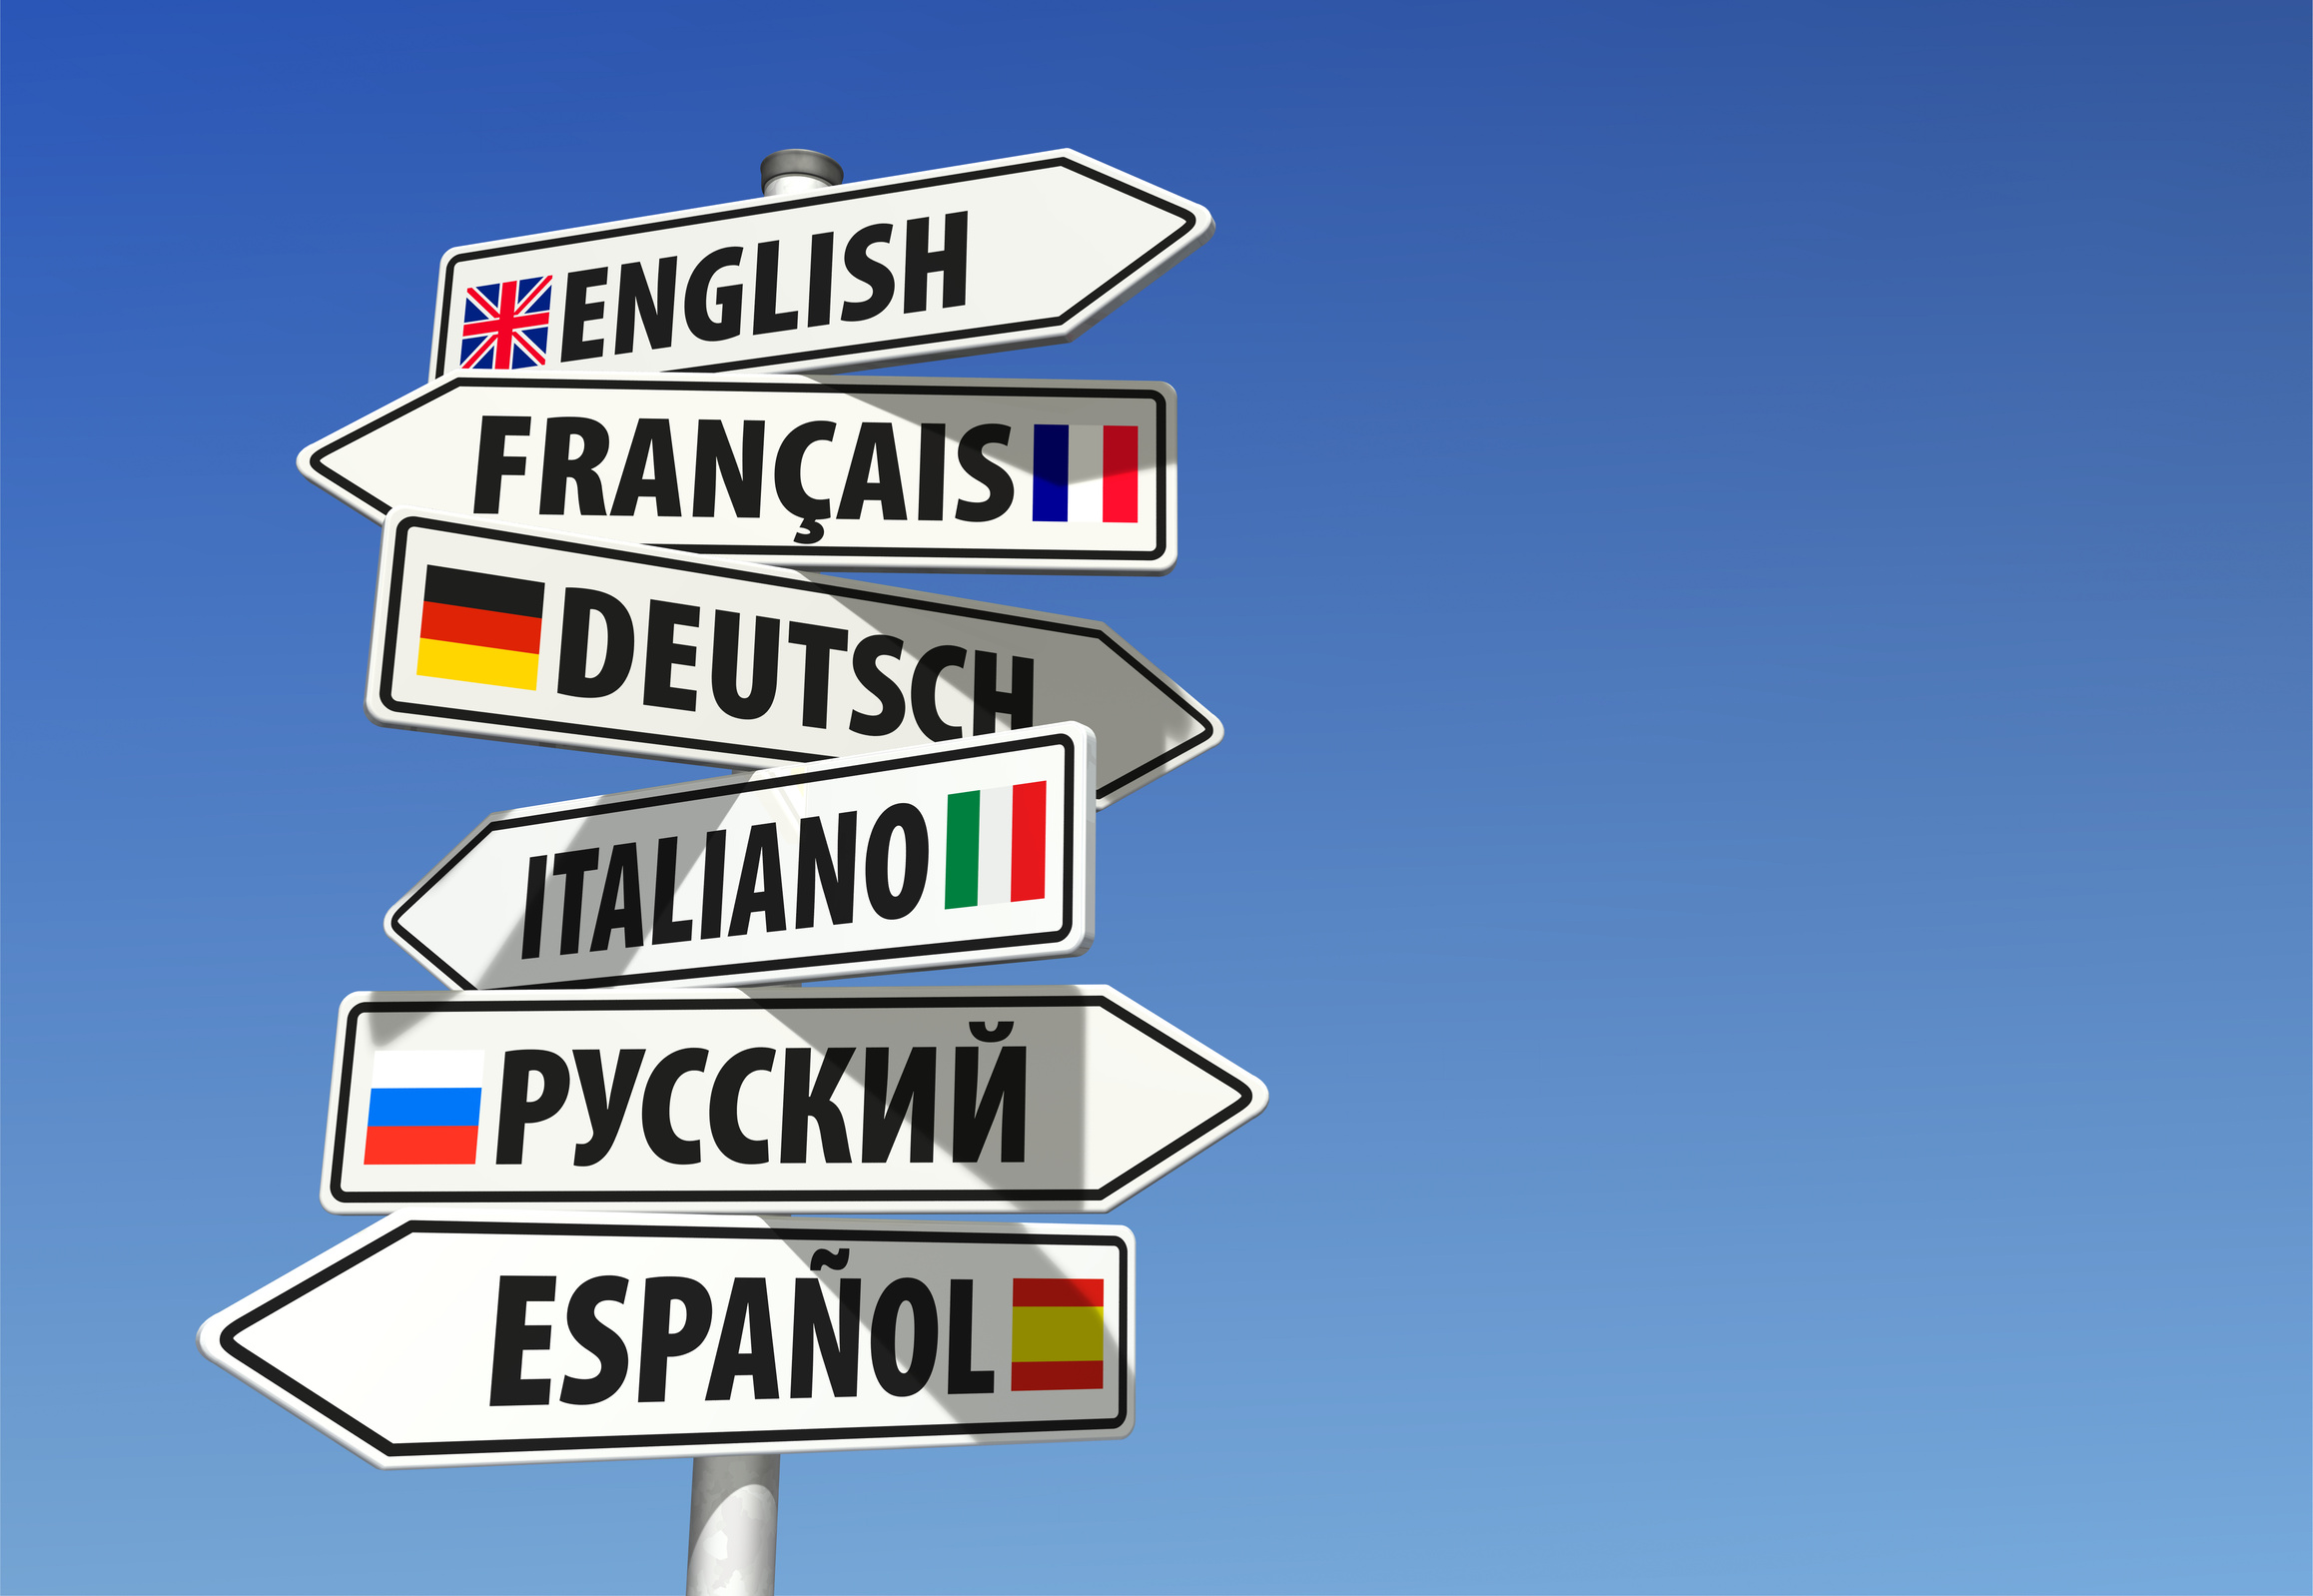 10 conseils indispensables pour apprendre une langue étrangère rapidement ✓ Apprenez une langue étrangère de manière efficace ✓ Suivez nos conseils